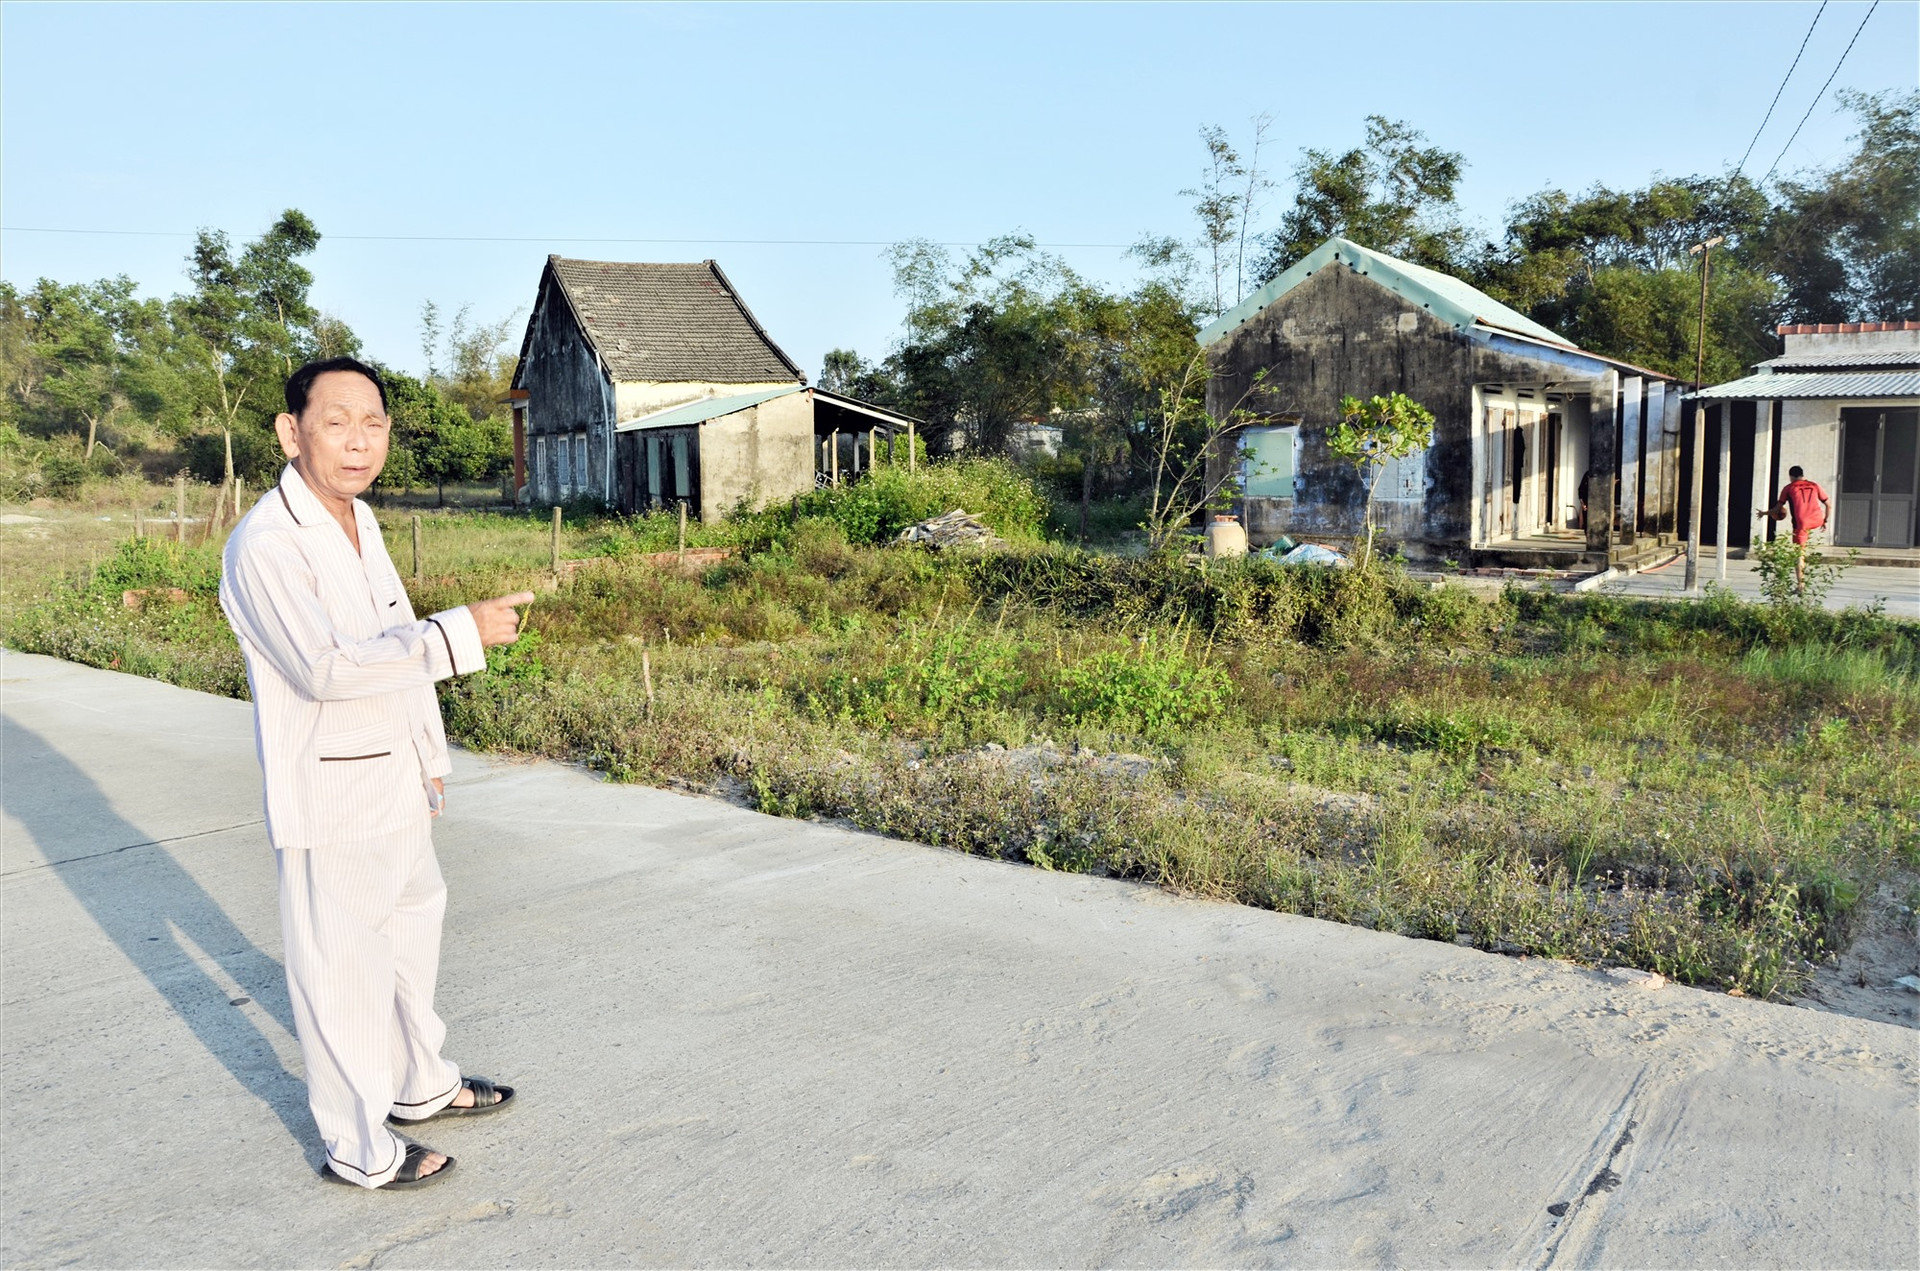 Ông Trần Văn Minh, người dân thôn Tây Sơn Đông (Duy Hải) phản ánh thực trạng đầu tư hạ tầng khu dân cư dở dang ảnh hưởng đến dân sinh. Ảnh: HP